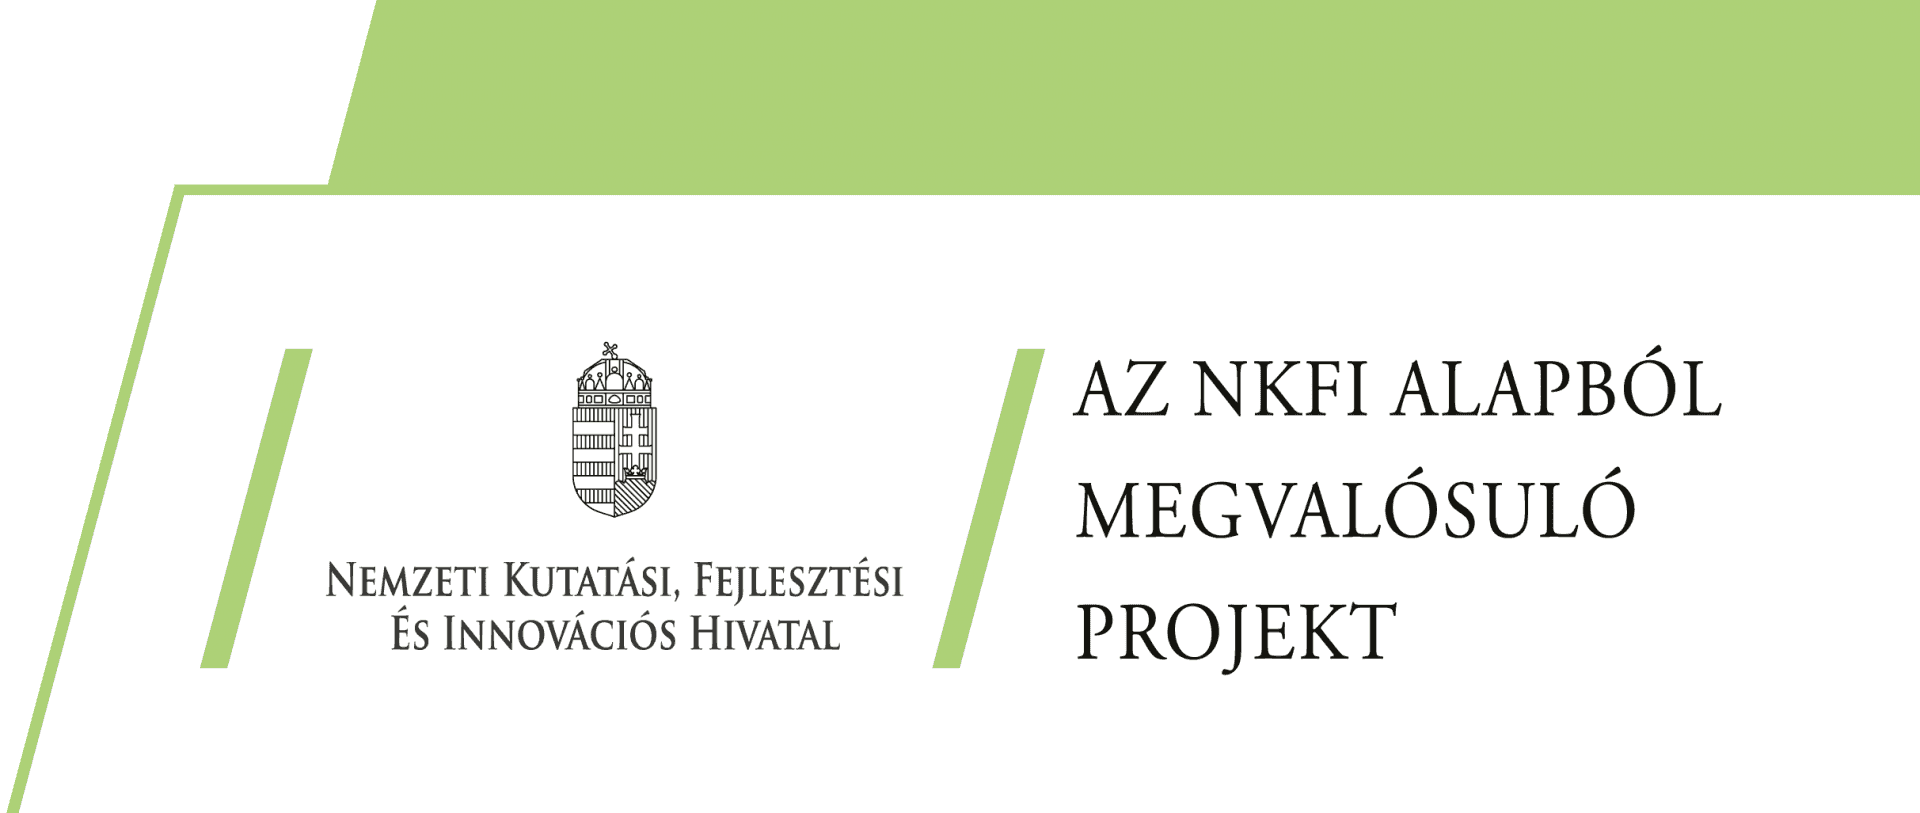 Az NKFI Alapból megvalósuló projekt